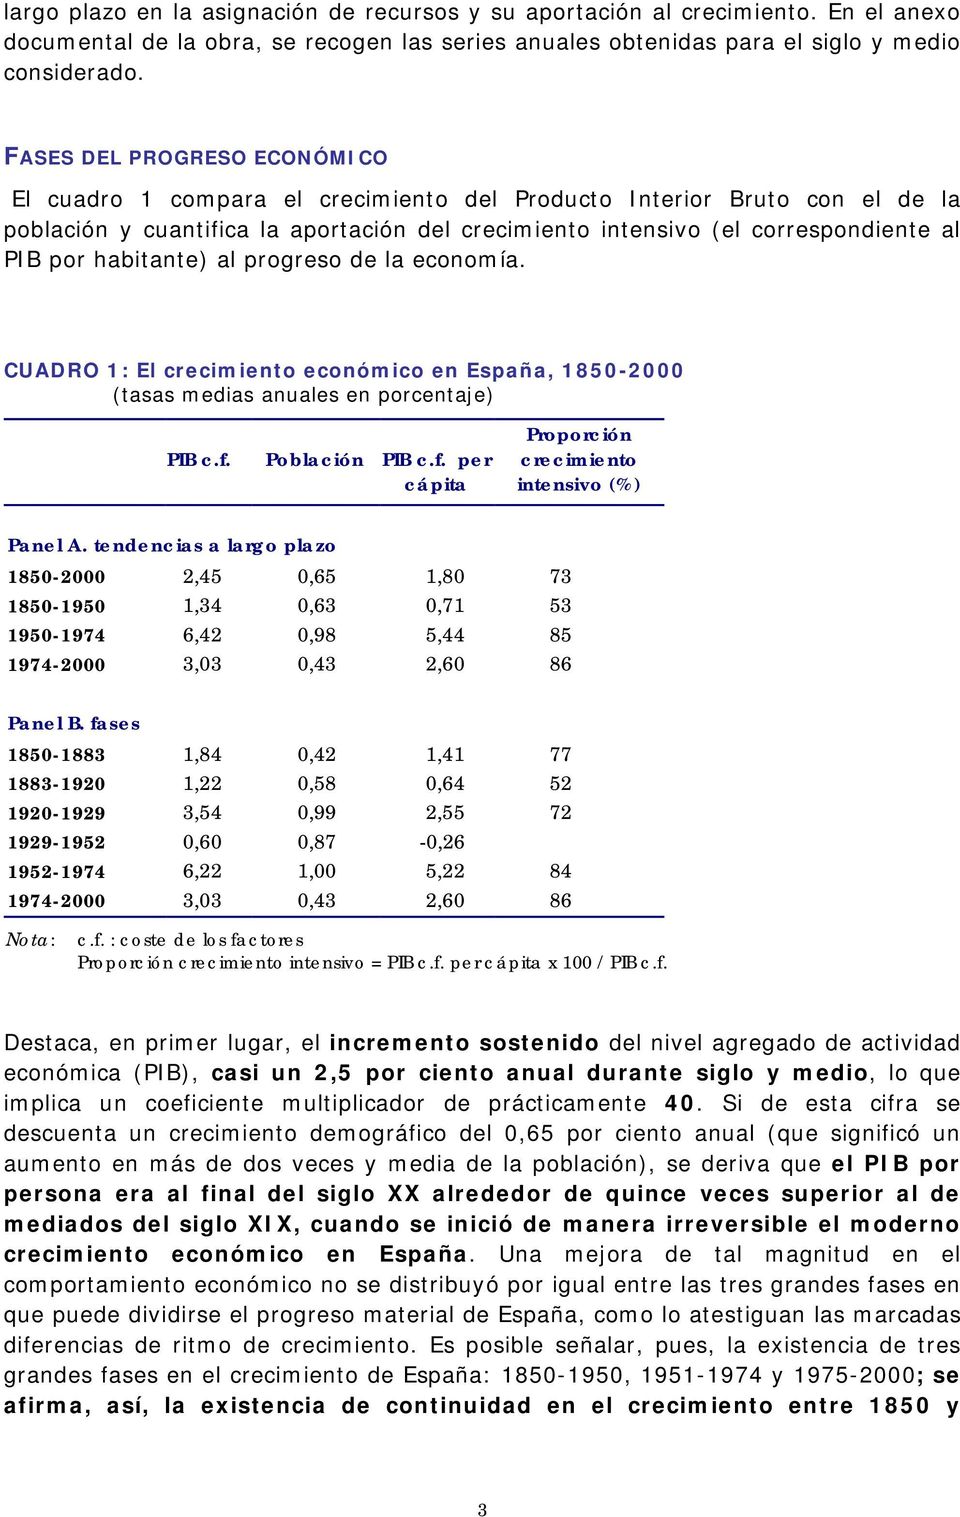 habitante) al progreso de la economía. CUADRO 1: El crecimiento económico en España, 1850-2000 (tasas medias anuales en porcentaje) PIB c.f. Población PIB c.f. per cápita Proporción crecimiento intensivo (%) Panel A.